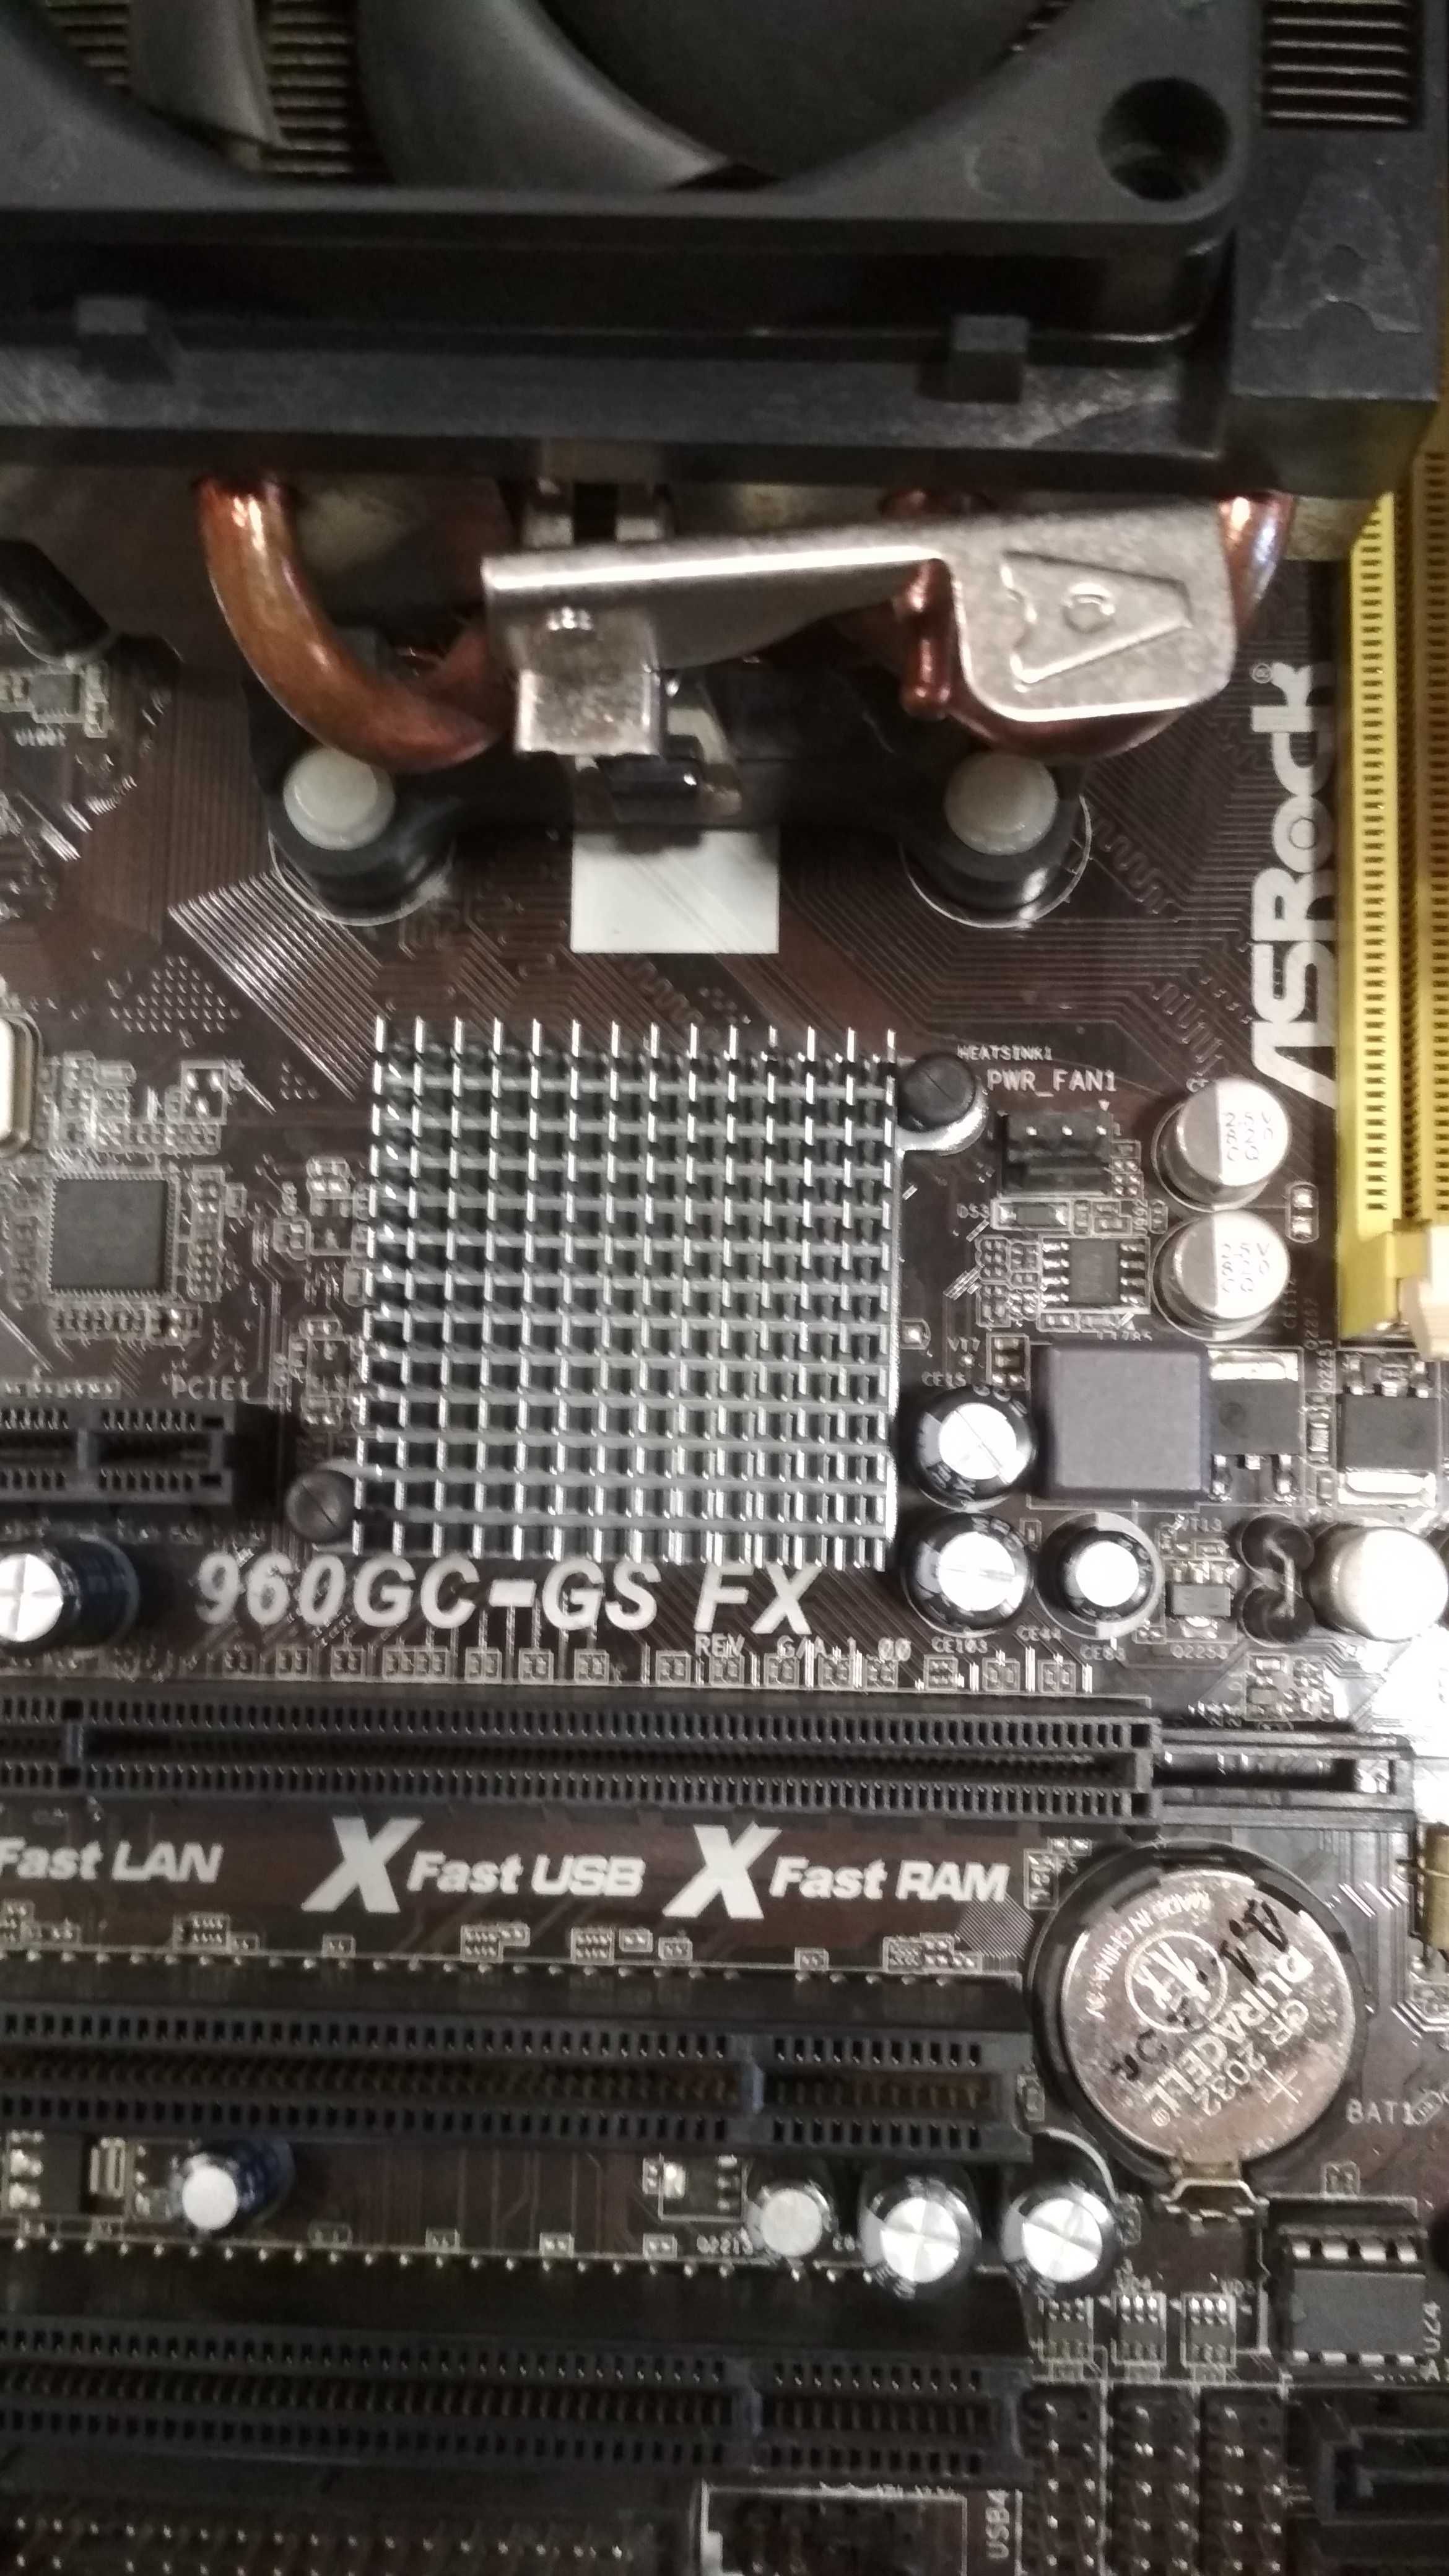 Дъно 960GC-GS FX + процесор AMD FX-8100